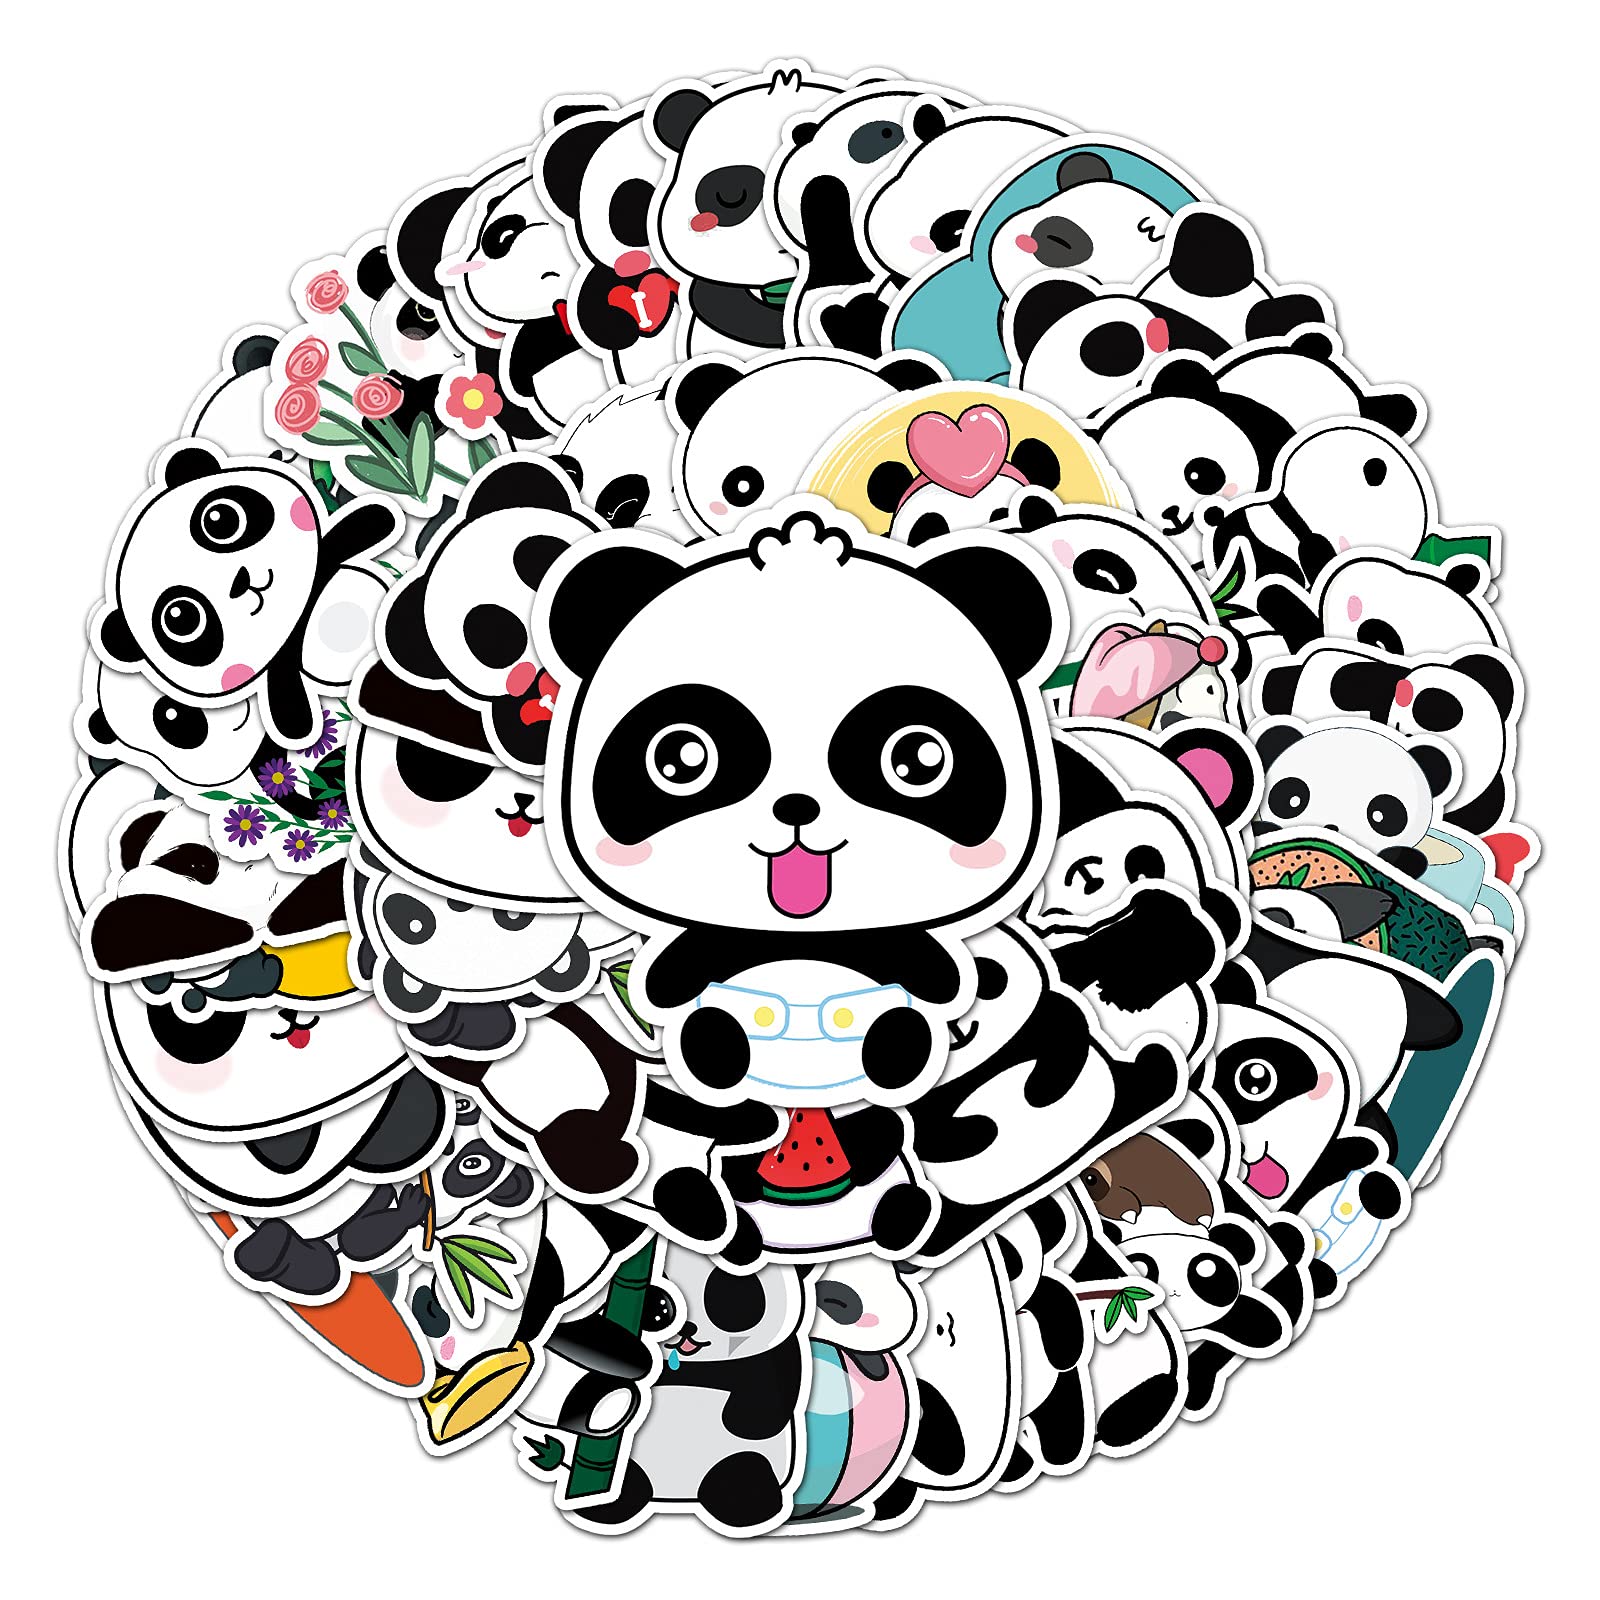 Gaojiwanju 50 Stück Panda Wasserfeste Aufkleber Sticker Set für Kinder Jugendliche Gemischtes Panda Vinyl Aufkleber für Auto Laptop Skateboard Fahrrad Moped Motorrad Motorräder Gepäck Computer Koffer von Gaojiwanju